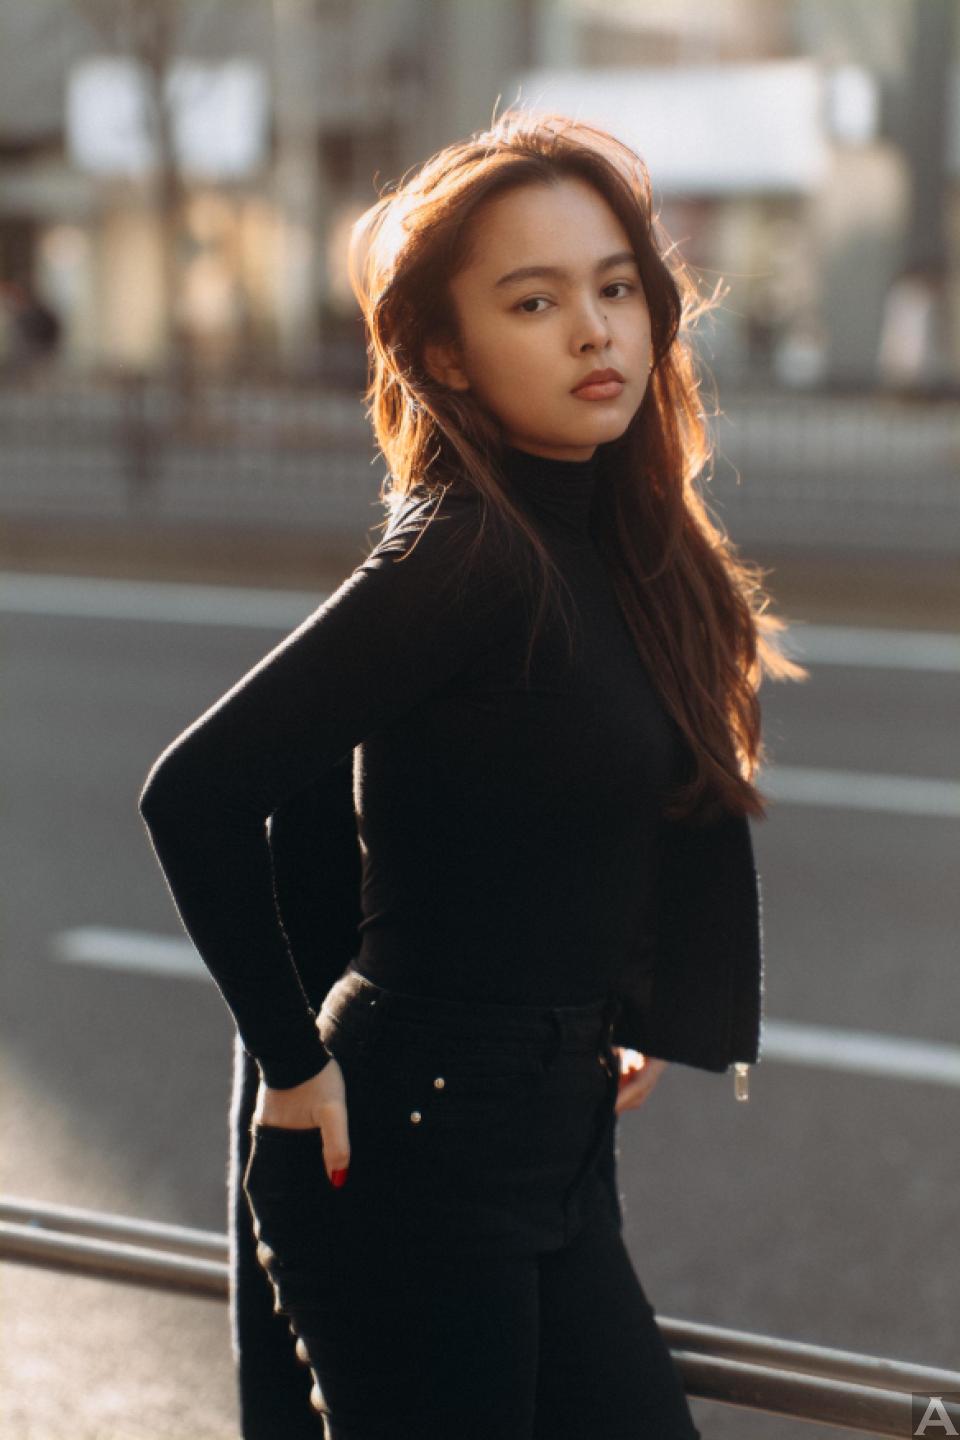 東京外国人モデル事務所アクアモデル所属のアジア人モデルのケイ